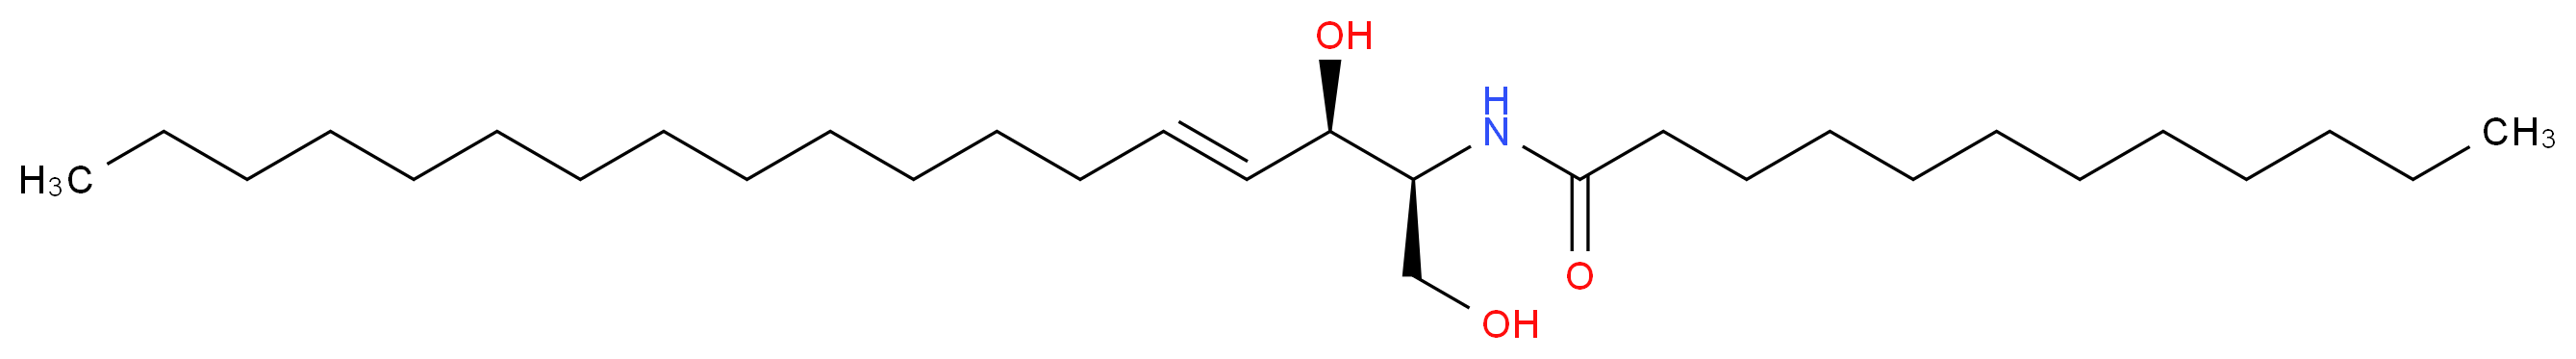 C12 Ceramide_Molecular_structure_CAS_74713-60-3)